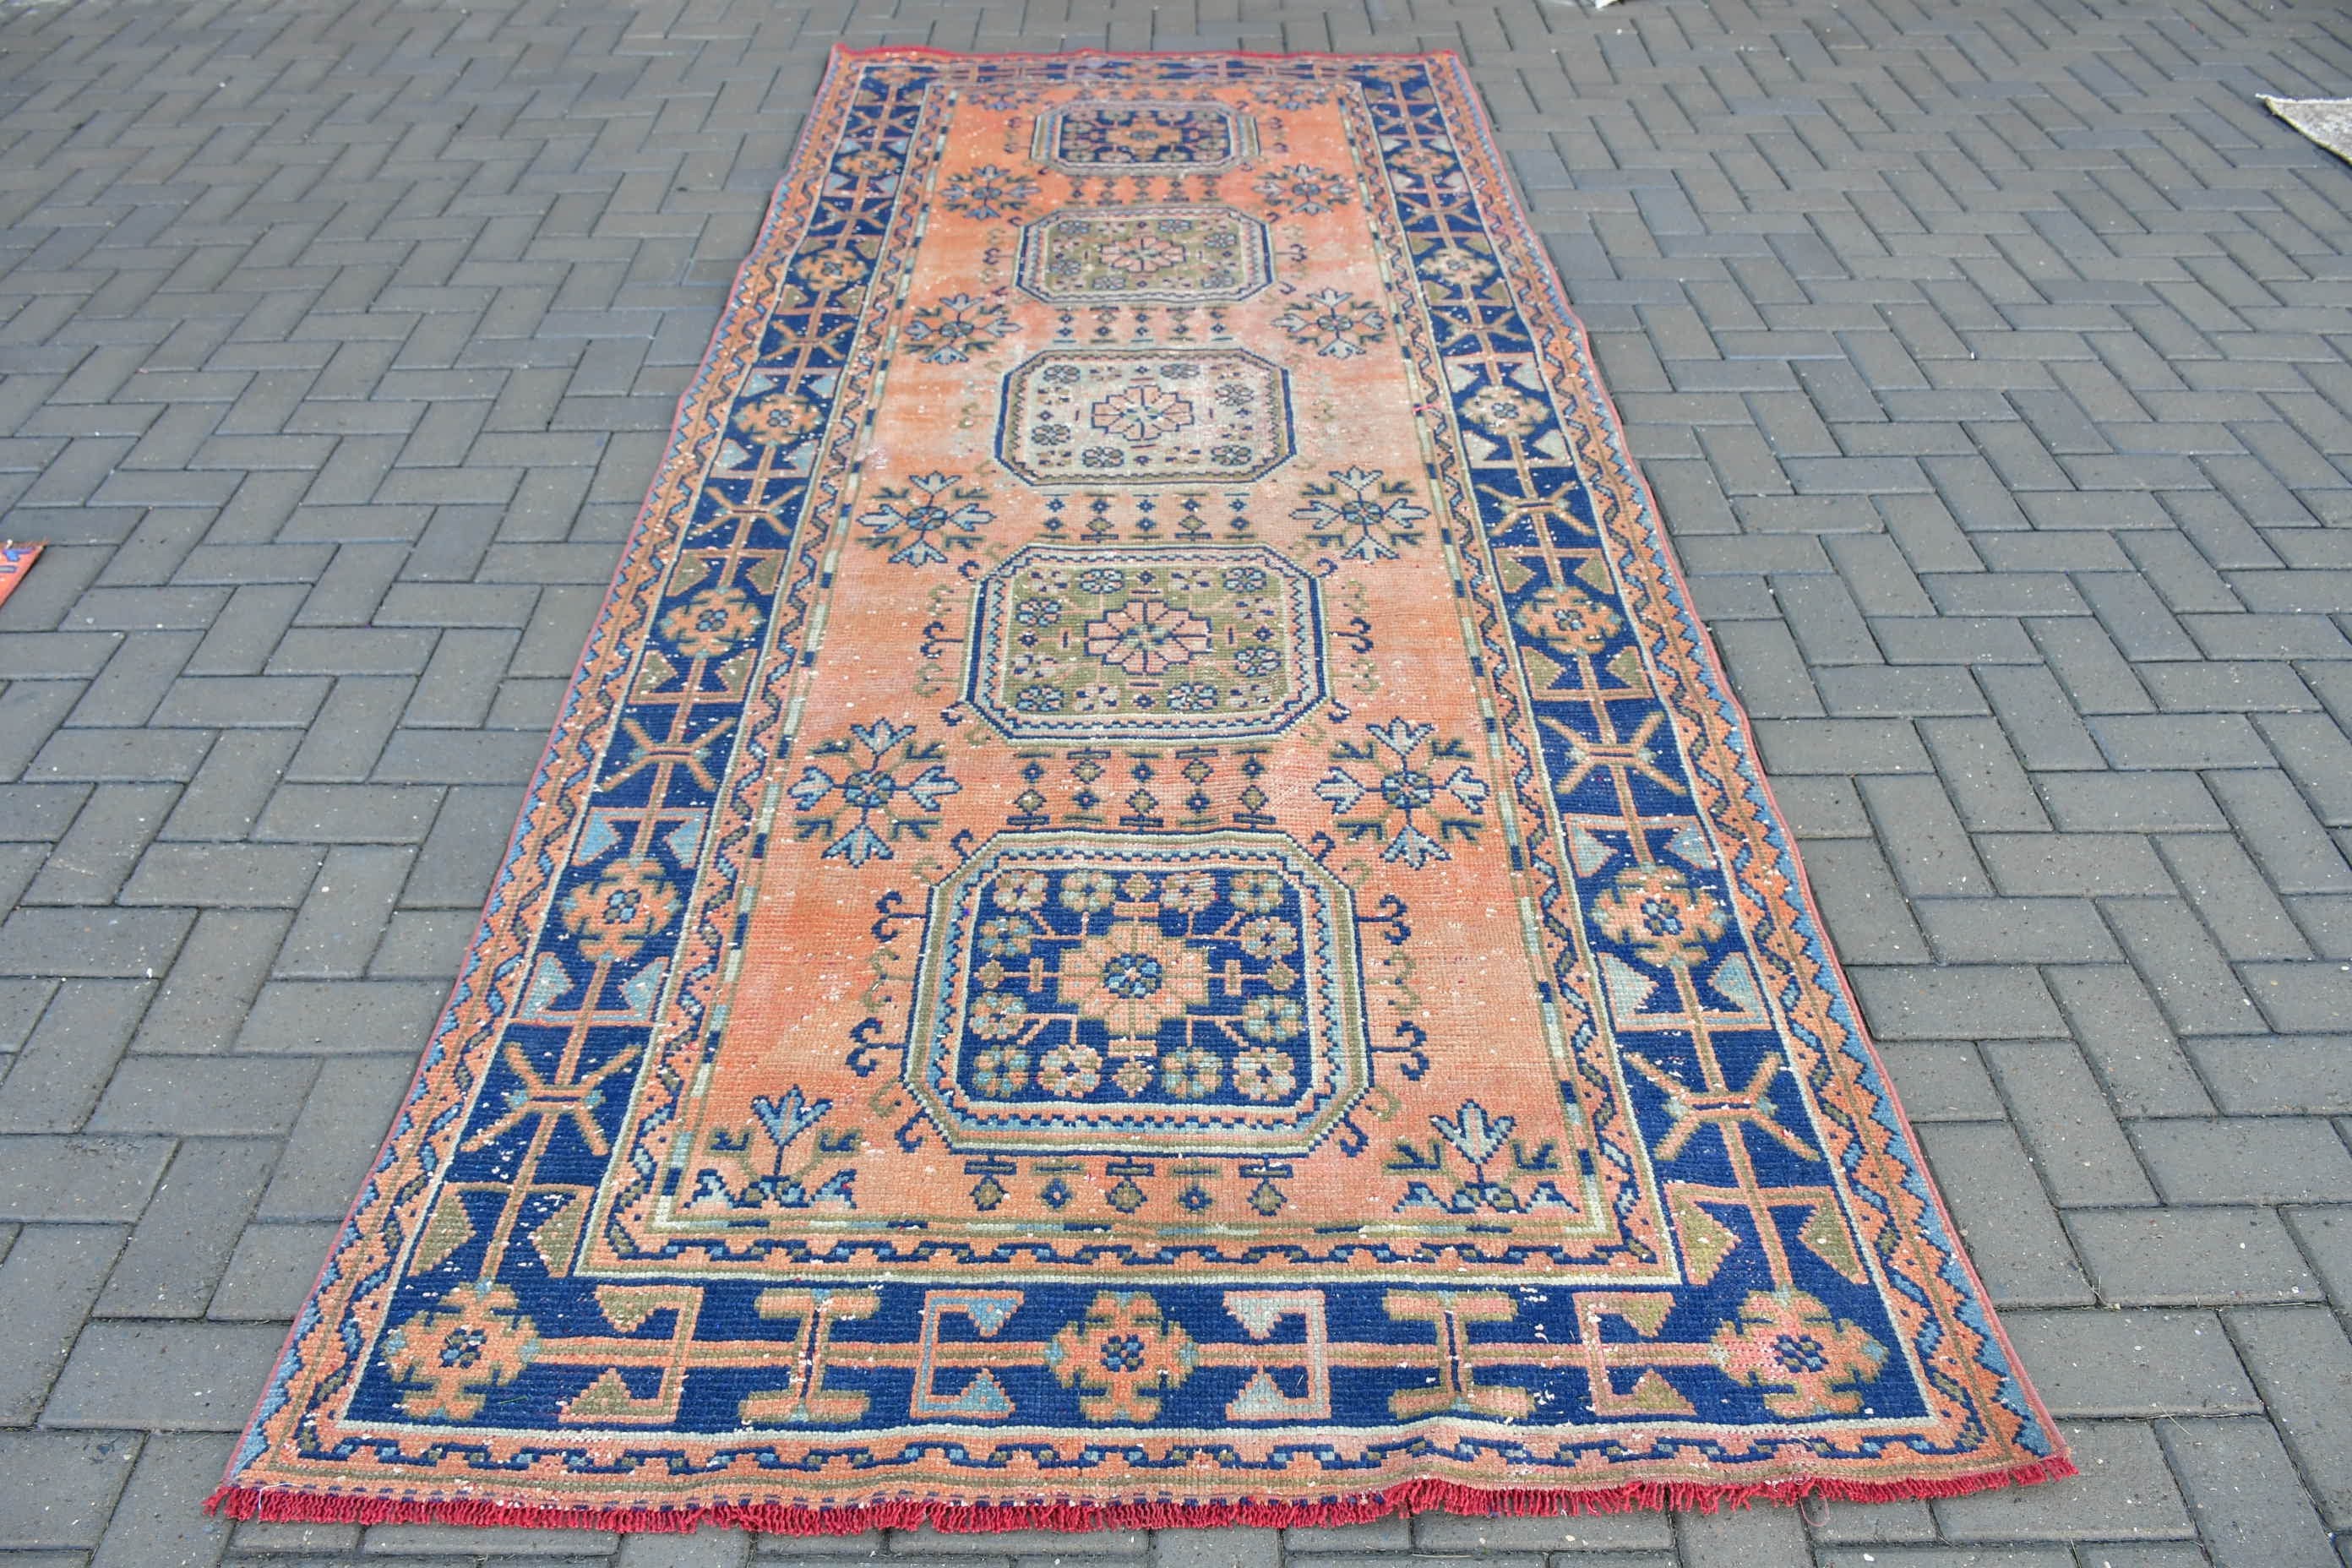 Oriental Rug, Vintage Rug, Anatolian Rug, Floor Rug, Turkish Rug, 4.7x11.3 ft Large Rug, Living Room Rugs, Orange Antique Rugs, Salon Rug